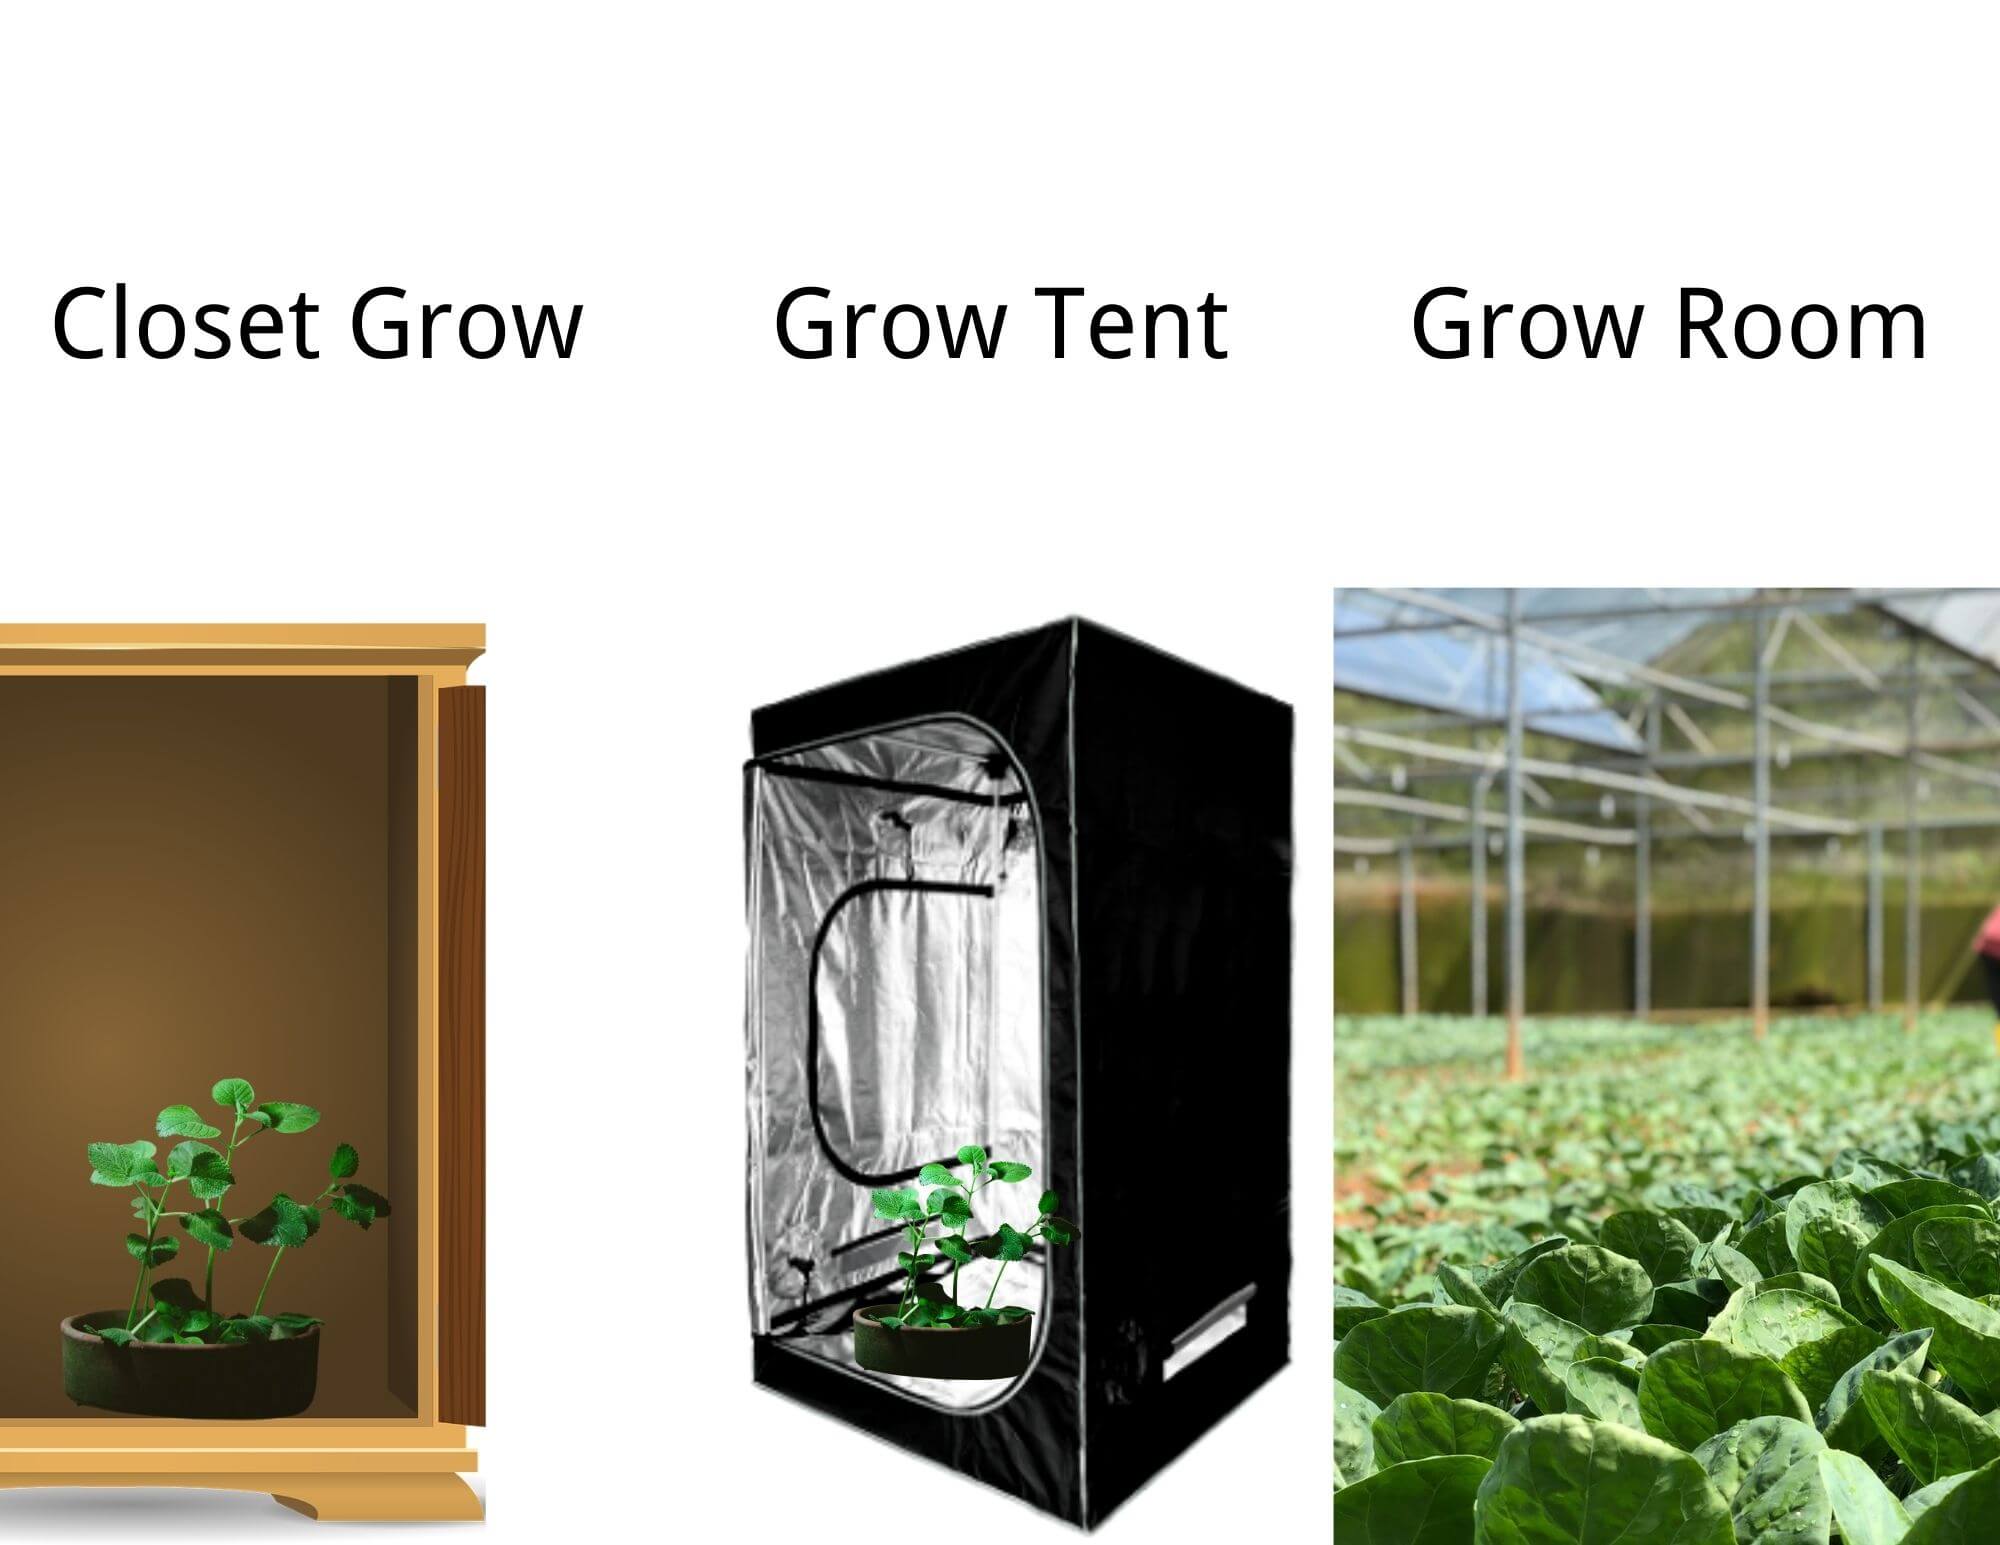 closet grow vs grow tent